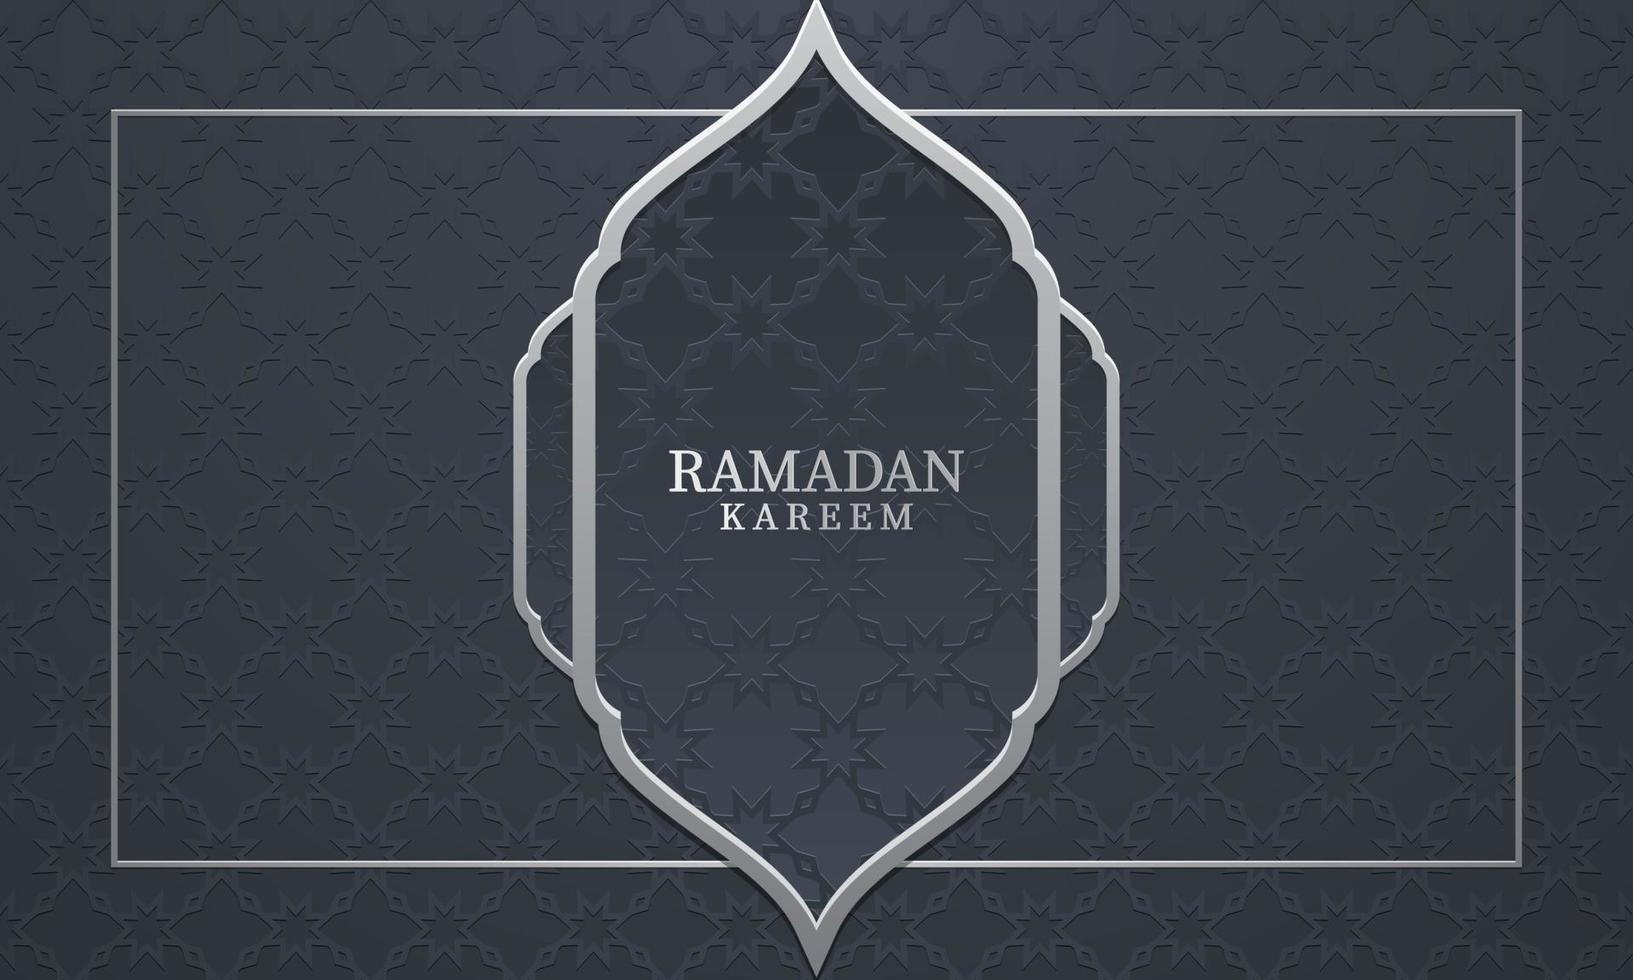 vektorgrafik av ramadan kareem med grå mönsterbakgrund. passar för gratulationskort, tapeter och annan ramadan bakgrund. vektor